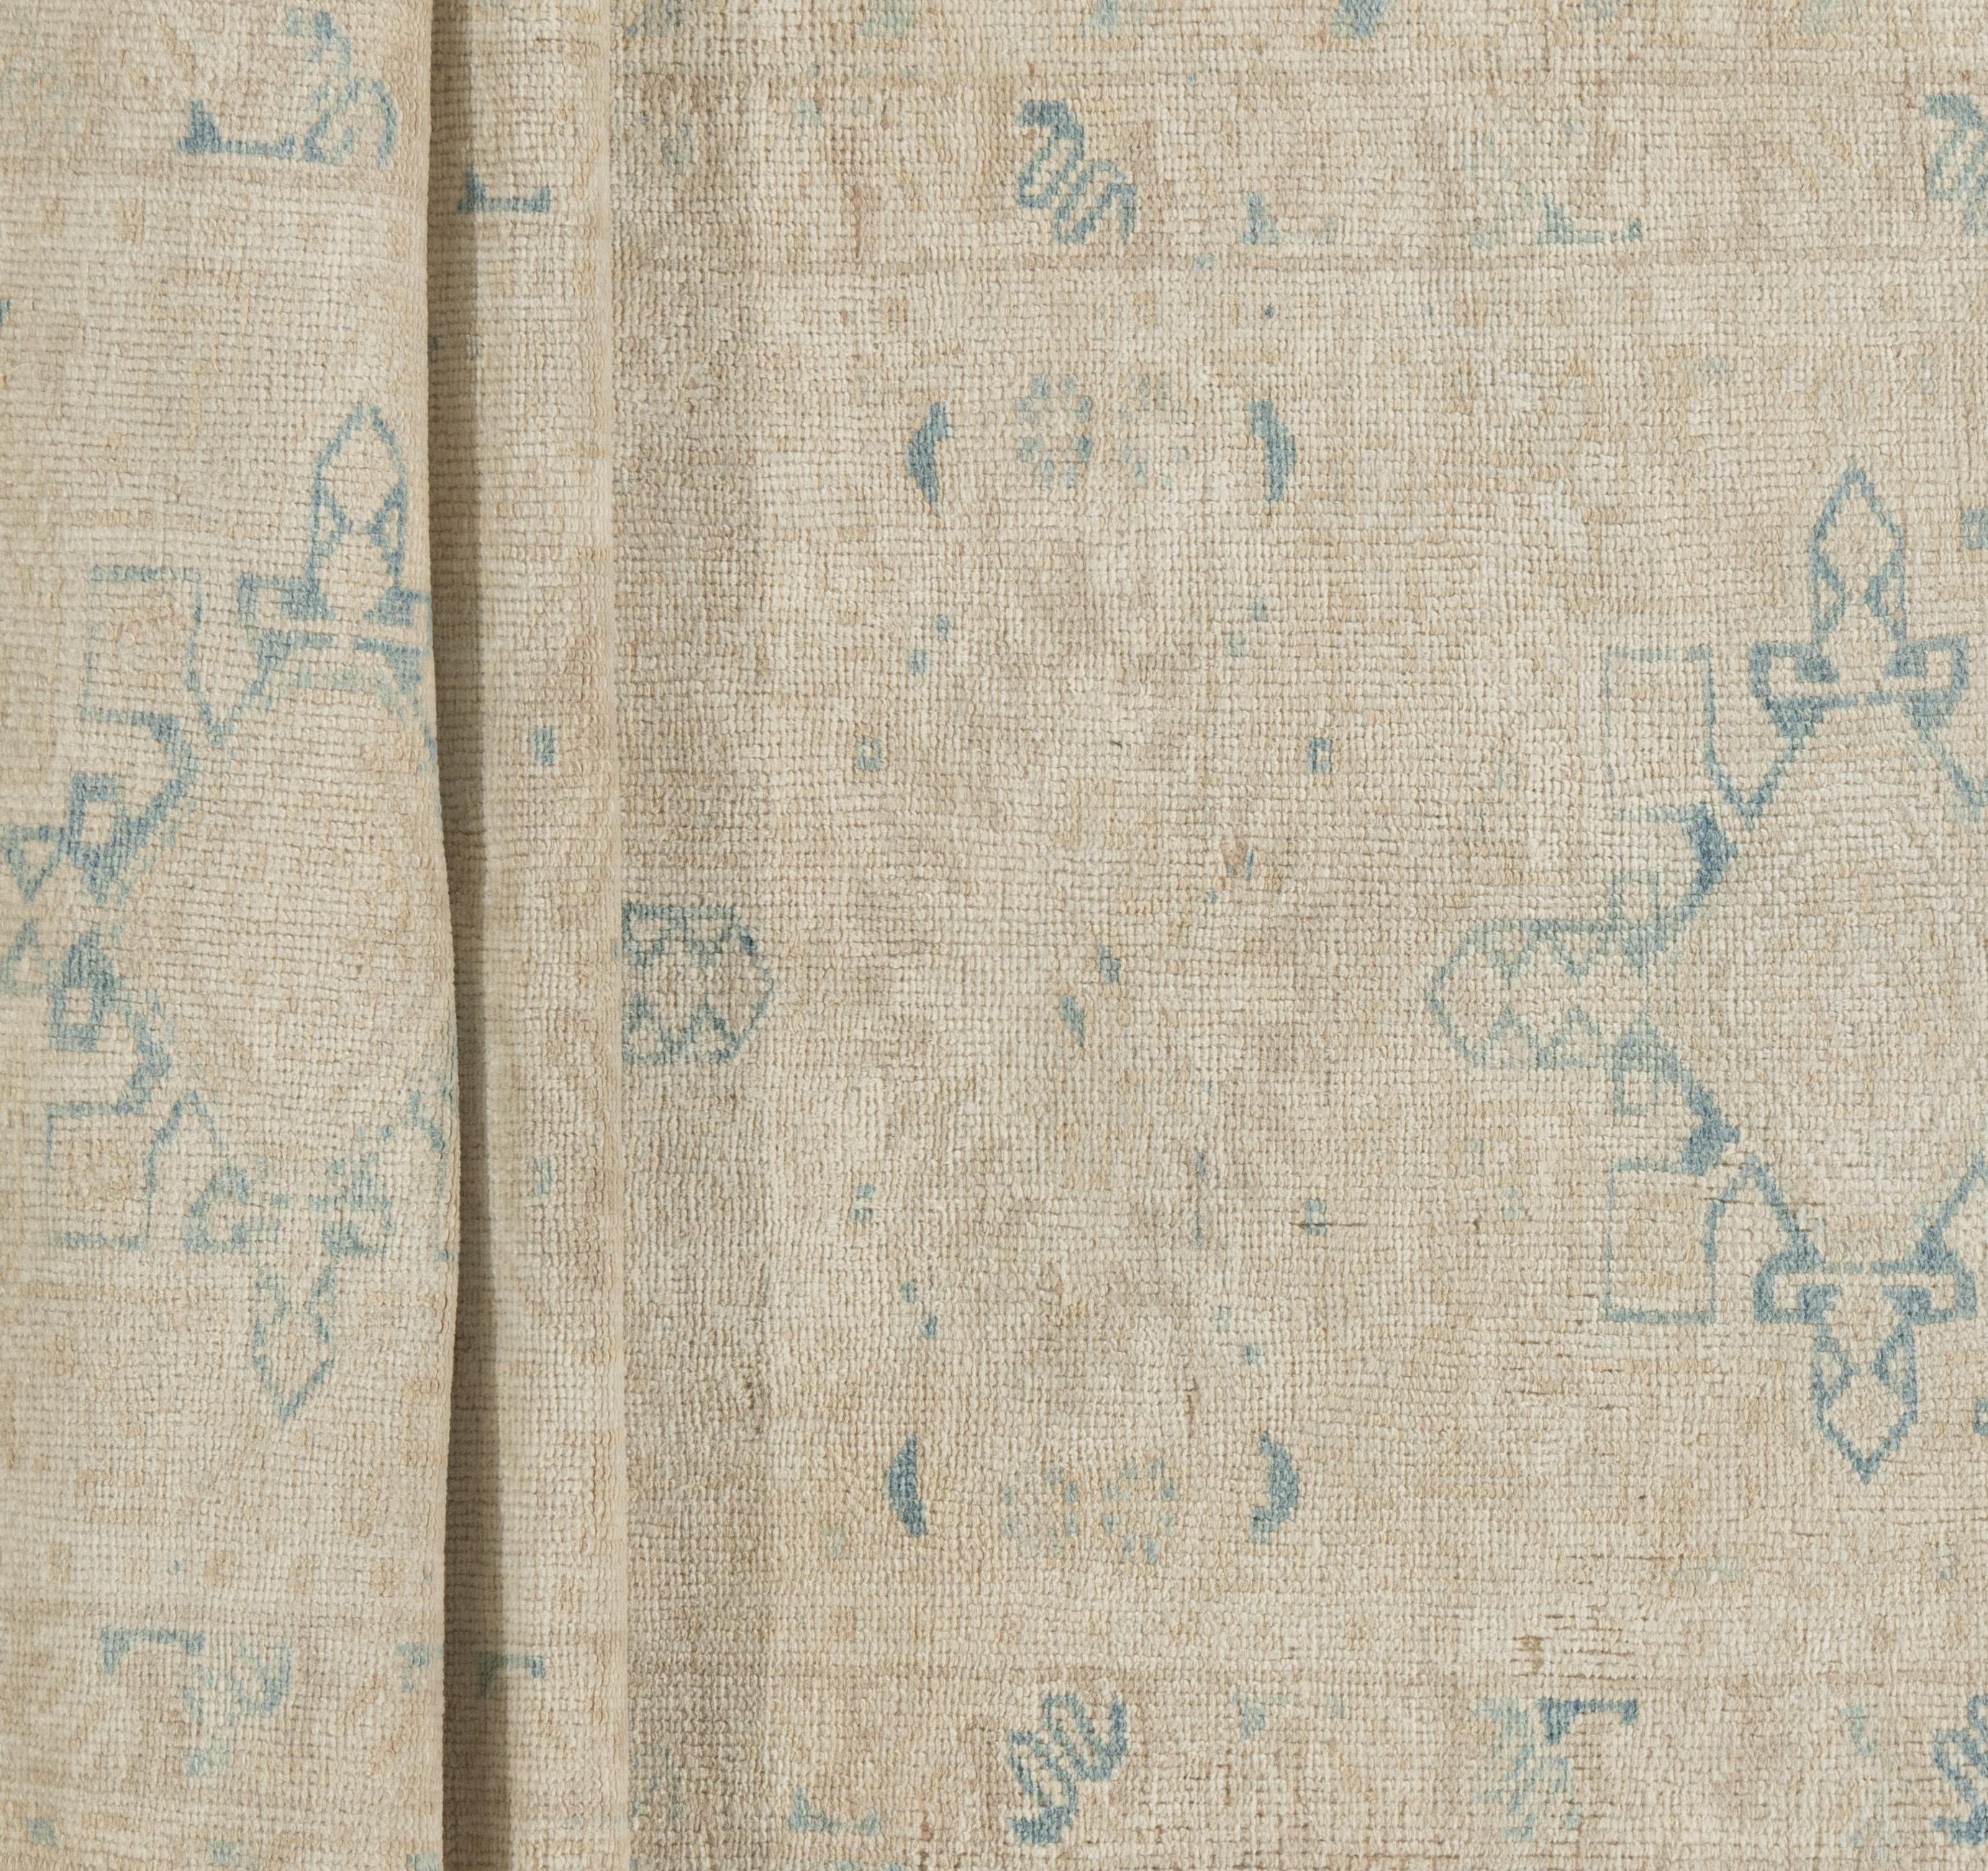 Wool Vintage Persian Heriz Runner 2'6 X 7'11 For Sale